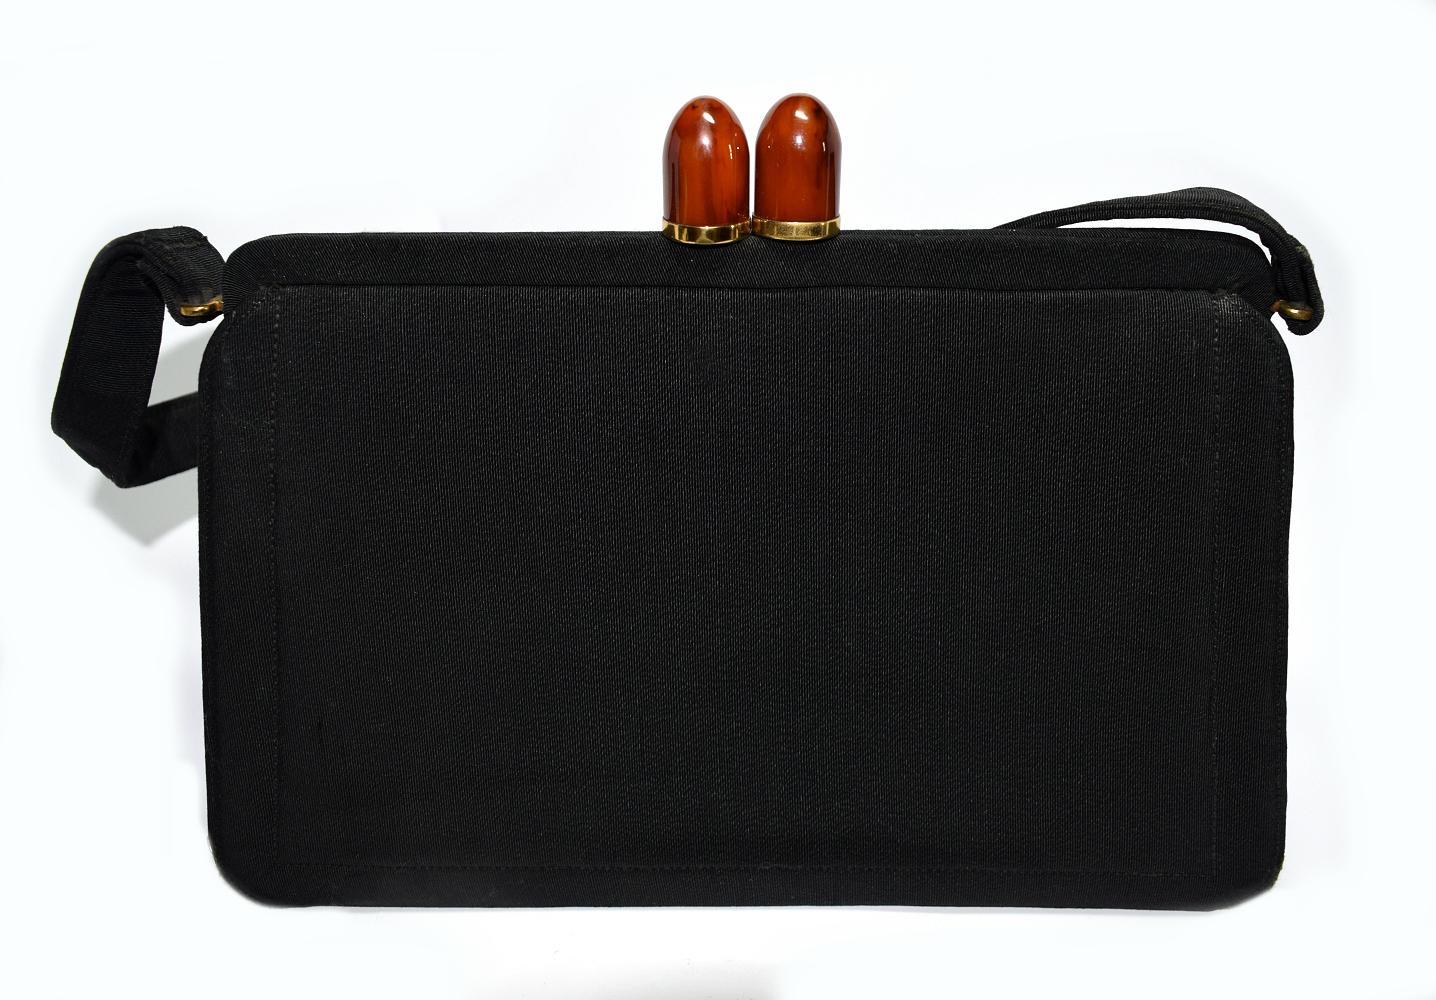 Diese wunderschöne Vintage-Handtasche wurde in den 1930er-1940er Jahren für Saks Fifth Avenue in New York hergestellt. Der Körper der Tasche ist aus schwarzem Ripsband gefertigt, während der Kiss-Lock-Verschluss eine kirschrote Bakelit-Hardware mit